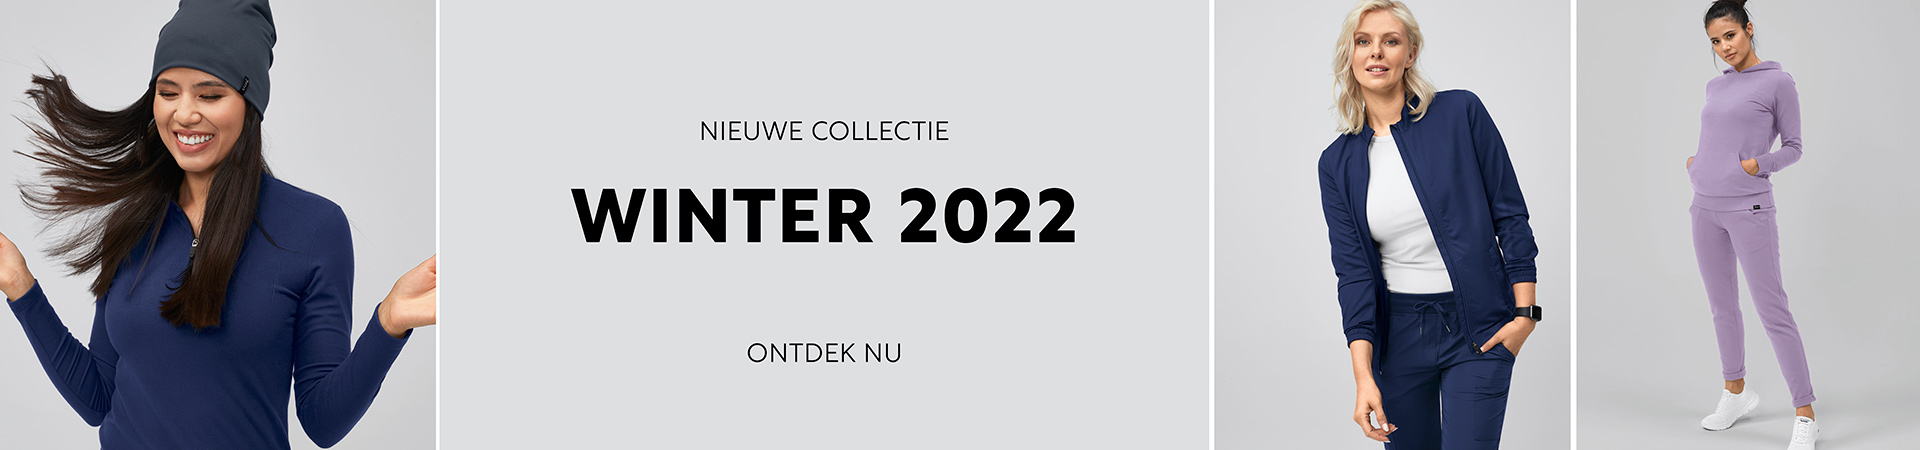 Nieuwe collectie winter 2022